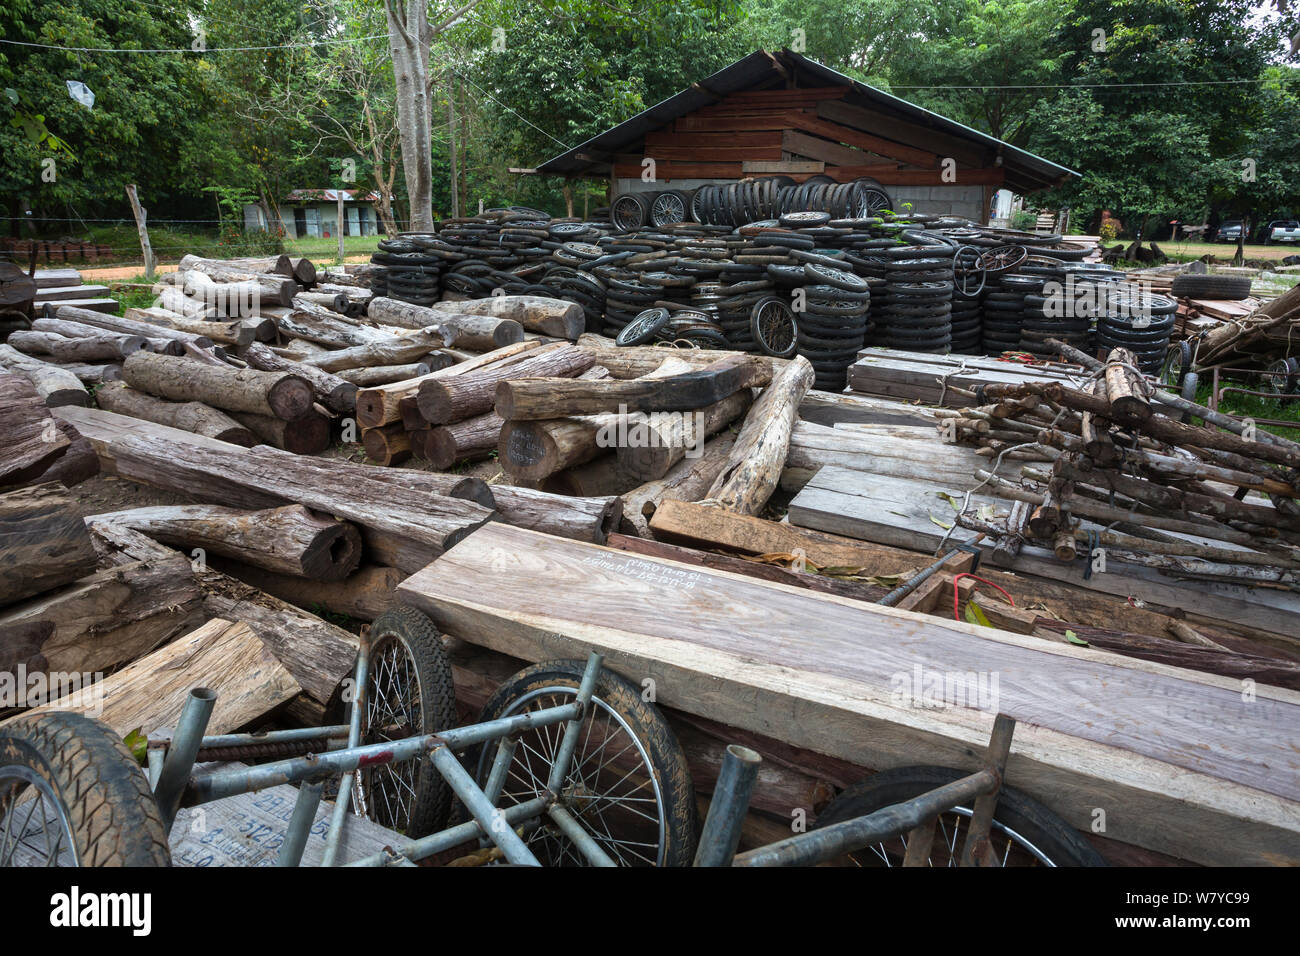 Siam rosewood Dalbergia cochinchinensis (arbre) et bois roues moto, confisqués à des braconniers, stockées en tant que preuve, Thap Lan National Park, Complexe forestier de Dong Phayayen-Khao Yai, Thaïlande, de l'est août. Banque D'Images